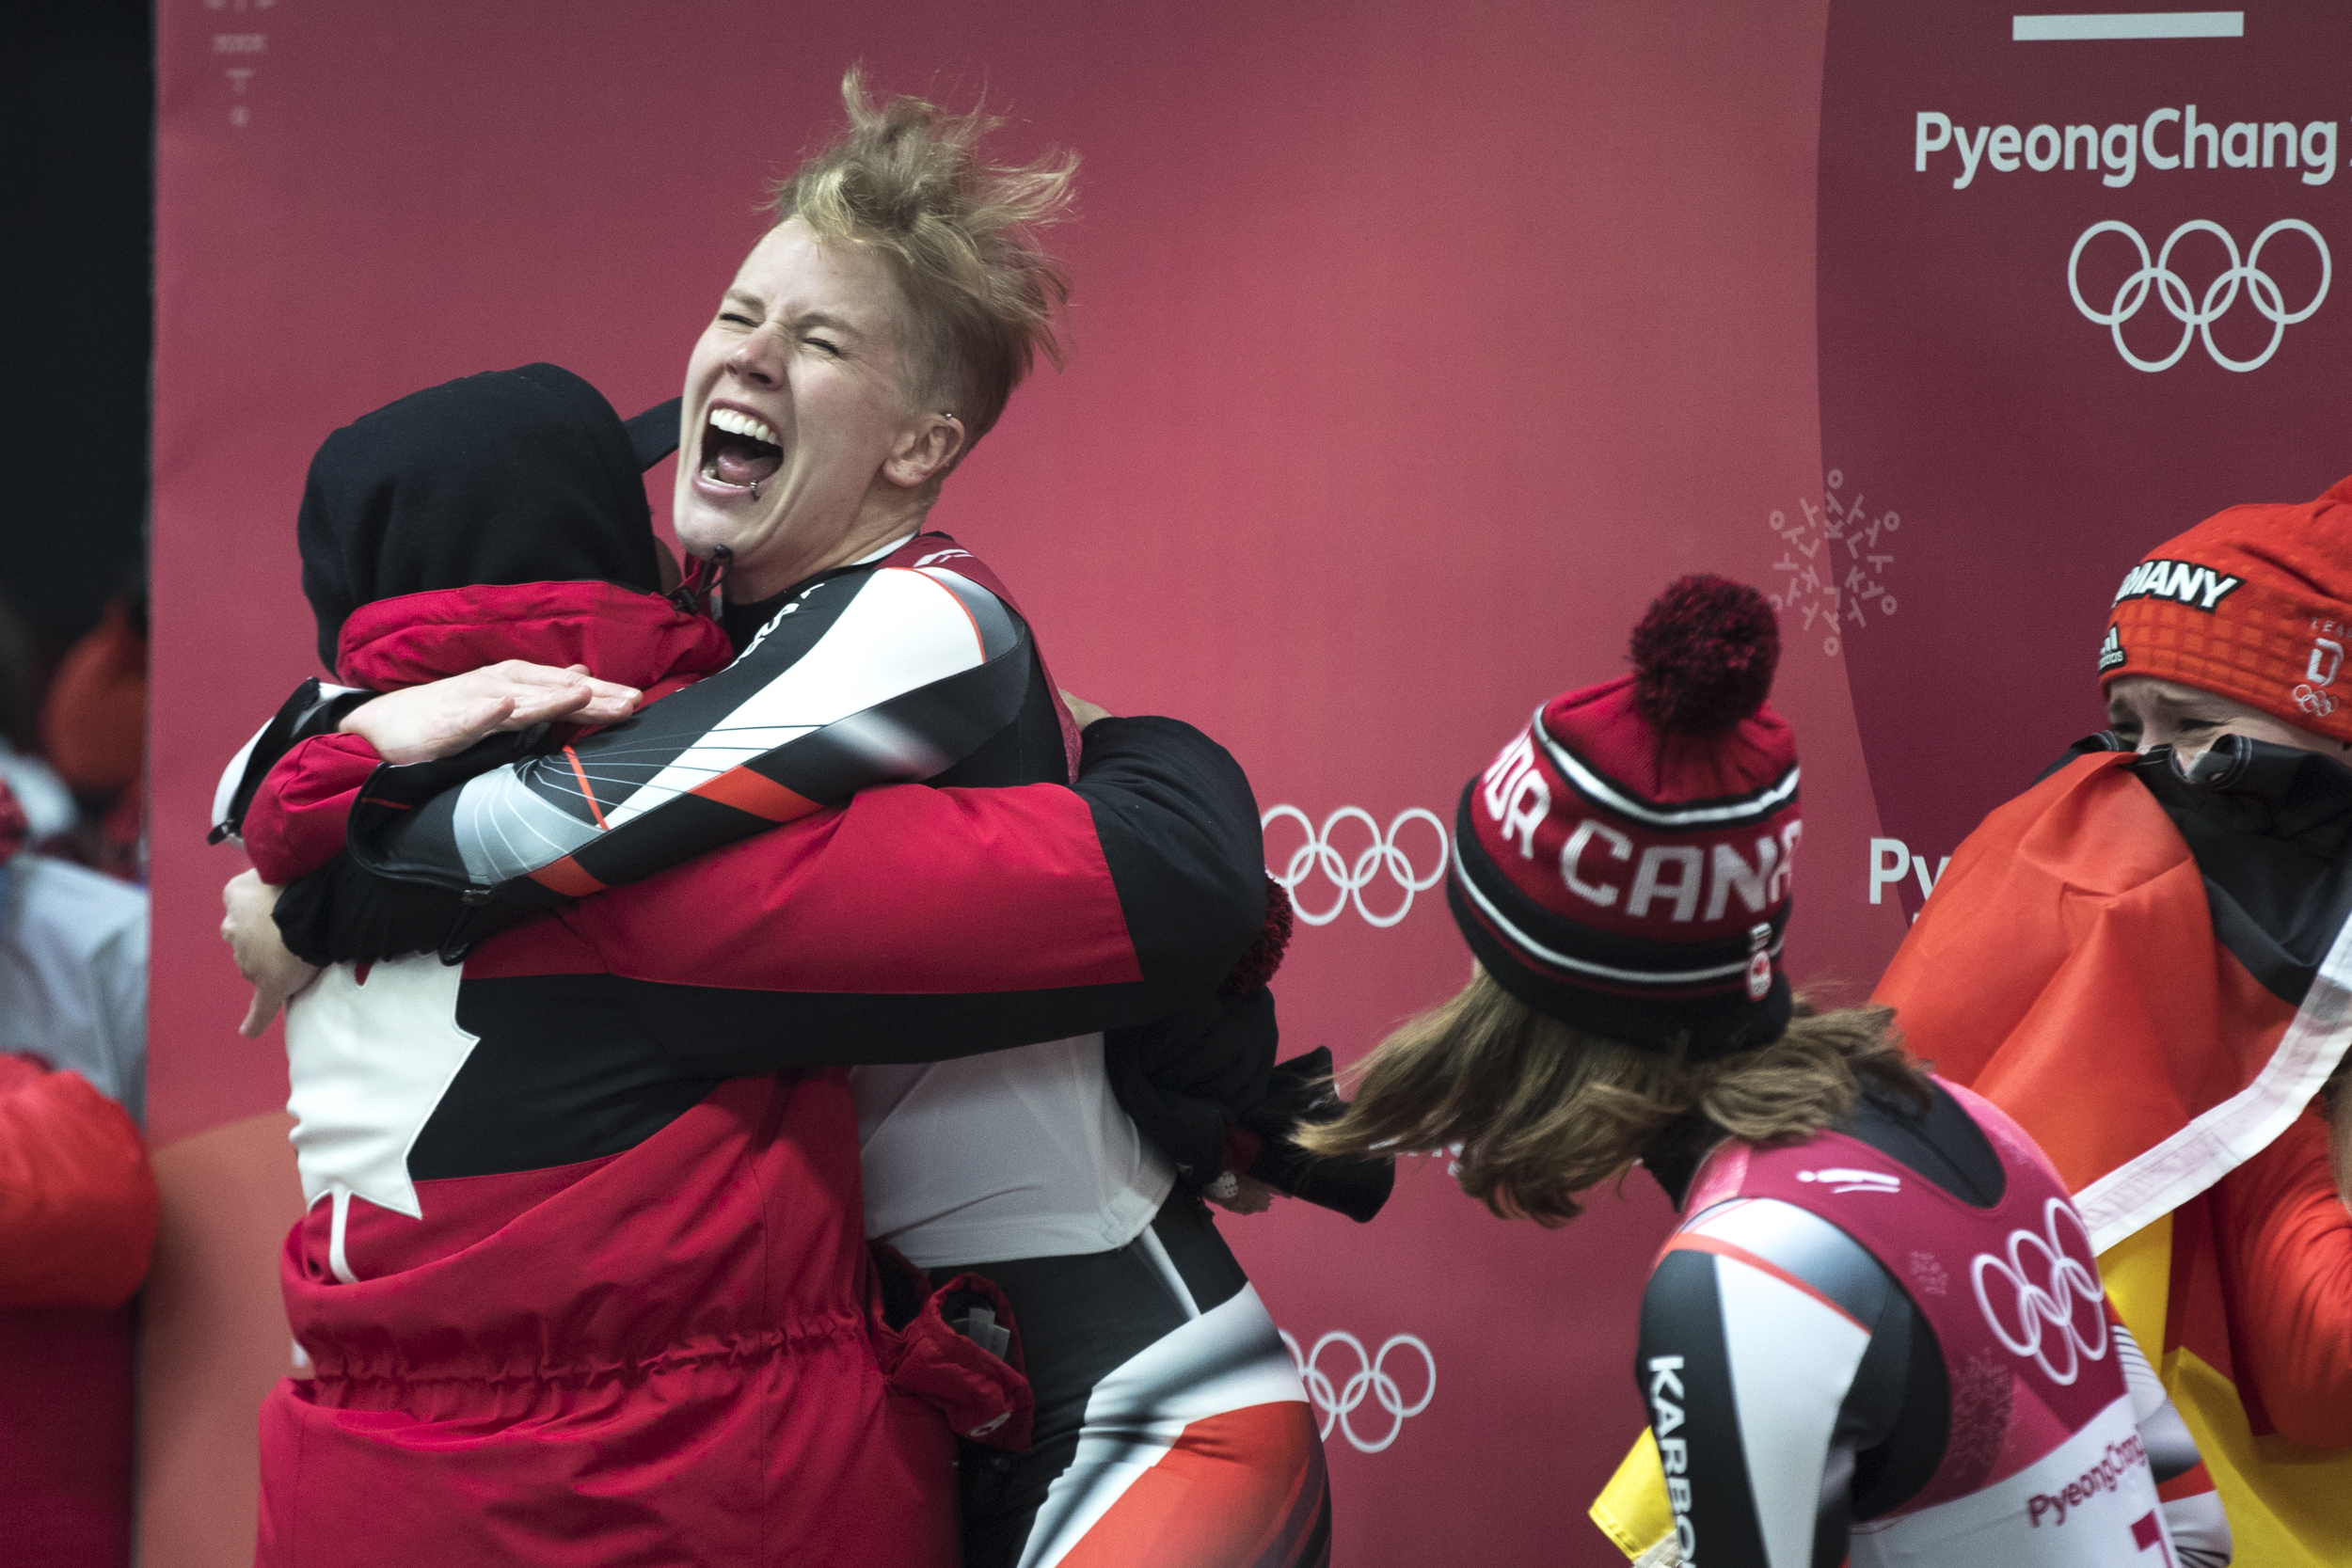 Alex Gough, d'Équipe Canada, célèbre sa médaille de bronze décrochée en luge individuelle féminine au Centre de glisse d'Alpensia, à PyeongChang, en Corée du Sud, le mardi 13 février 2018. C'est la première médaille de l'histoire remportée par Équipe Canada en luge. (Photo : David Jackson)